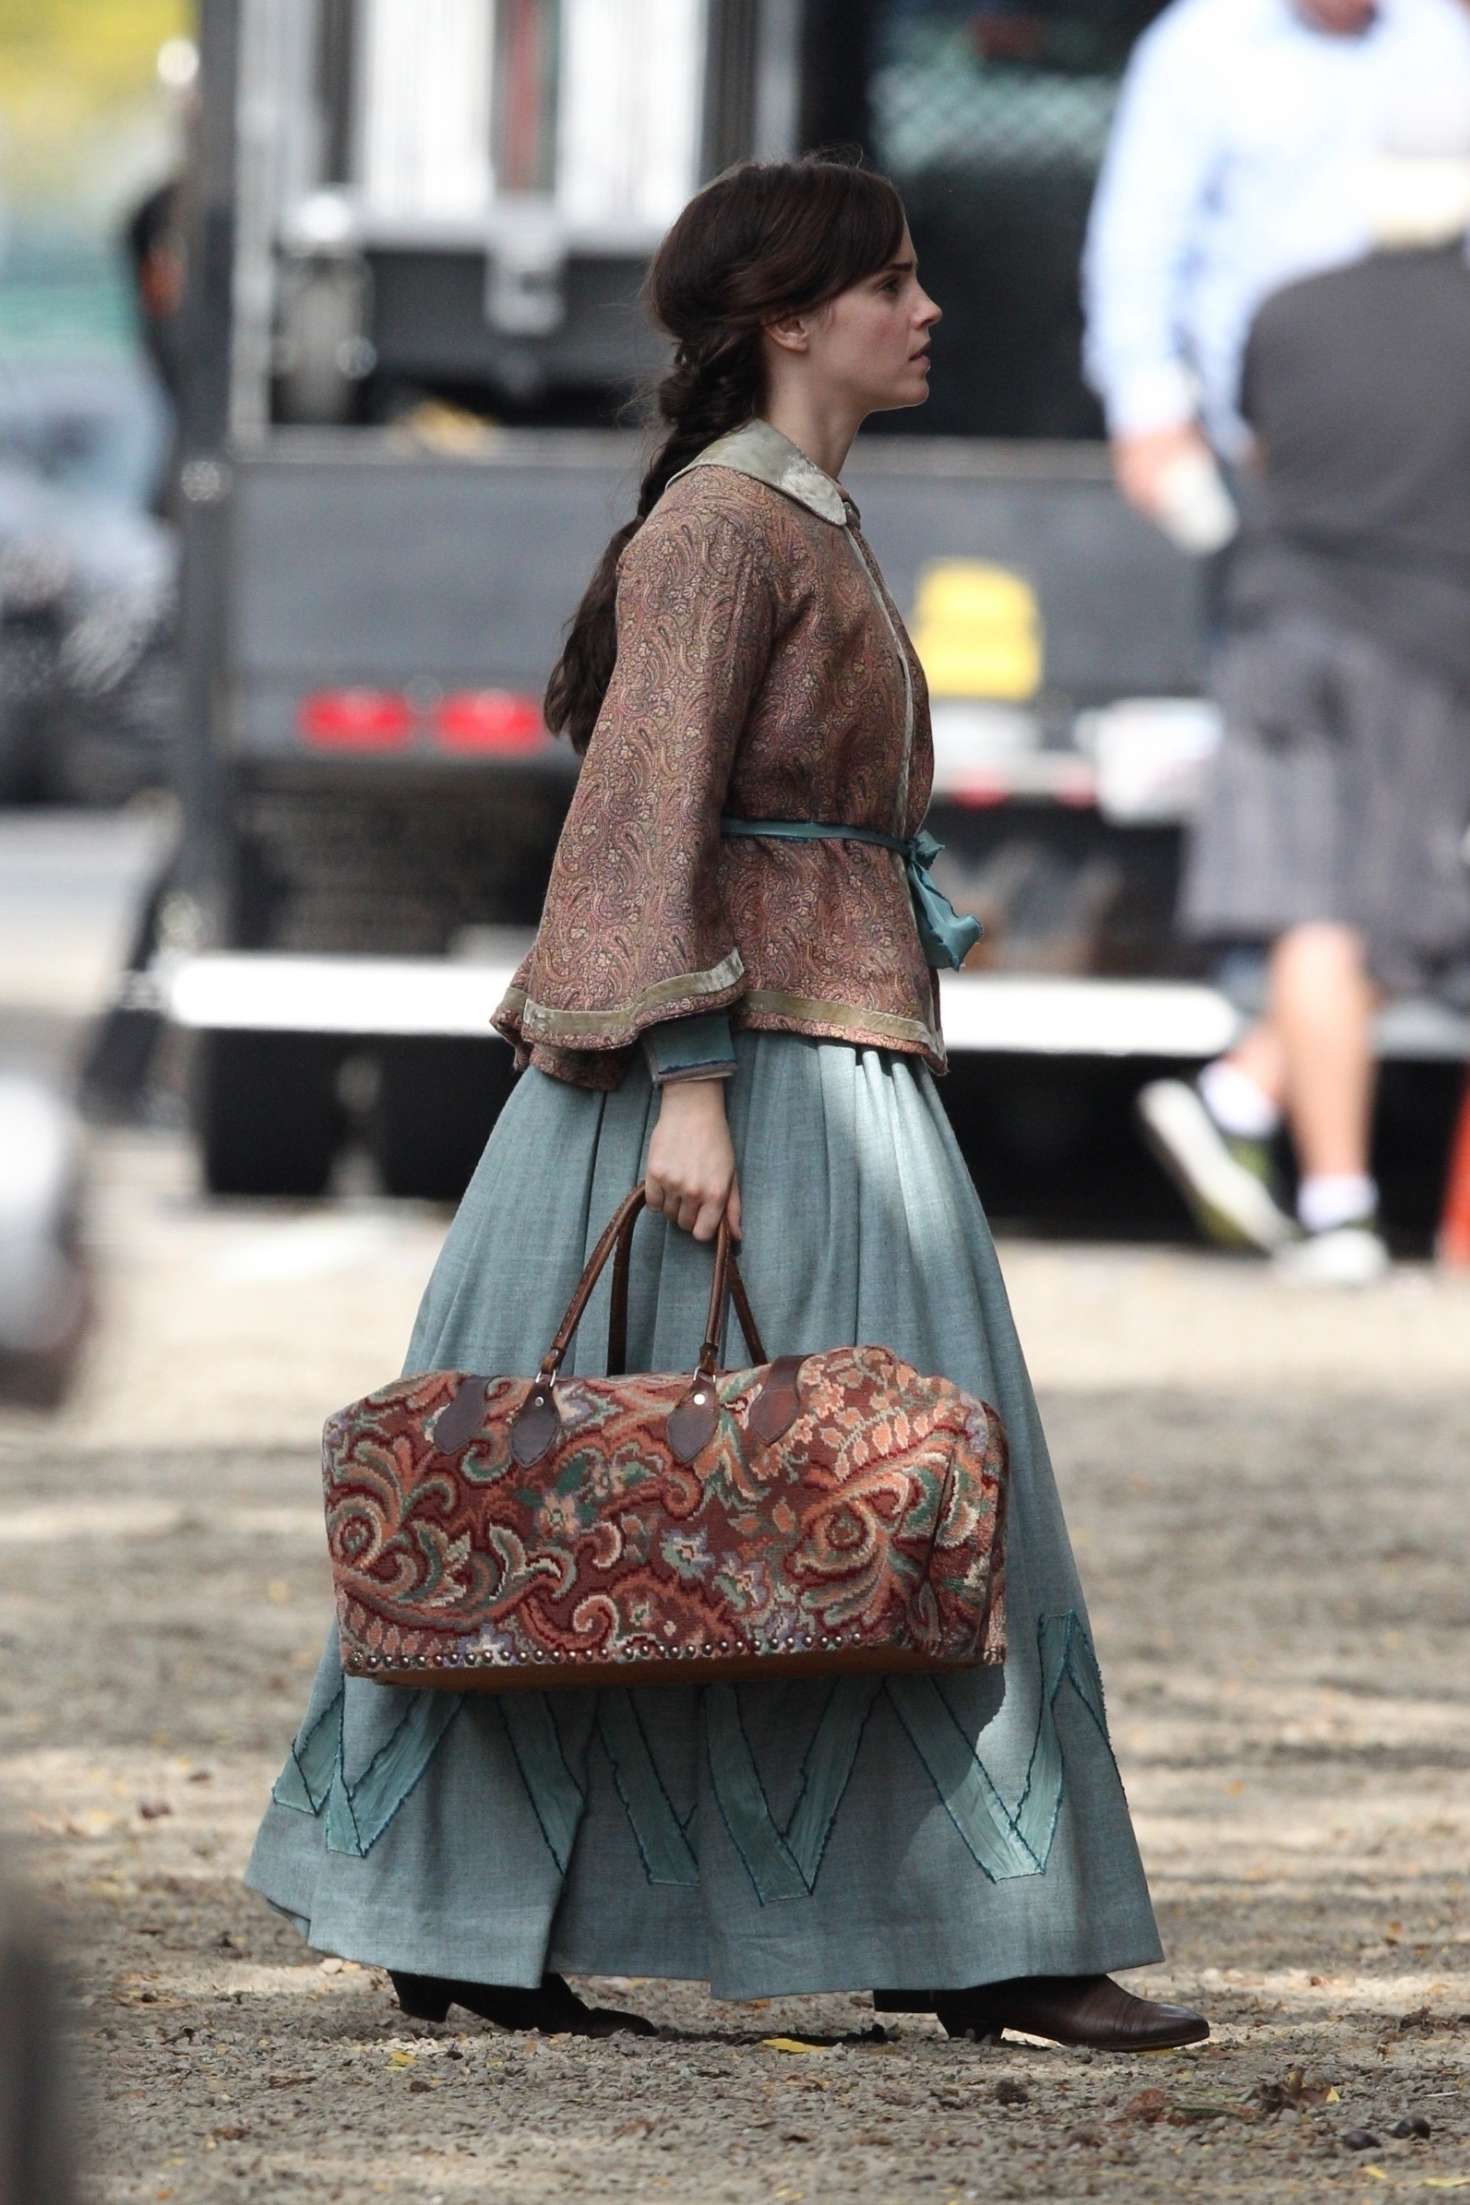 Emma Watson â€“ Filming â€˜Little Womenâ€™ in Boston